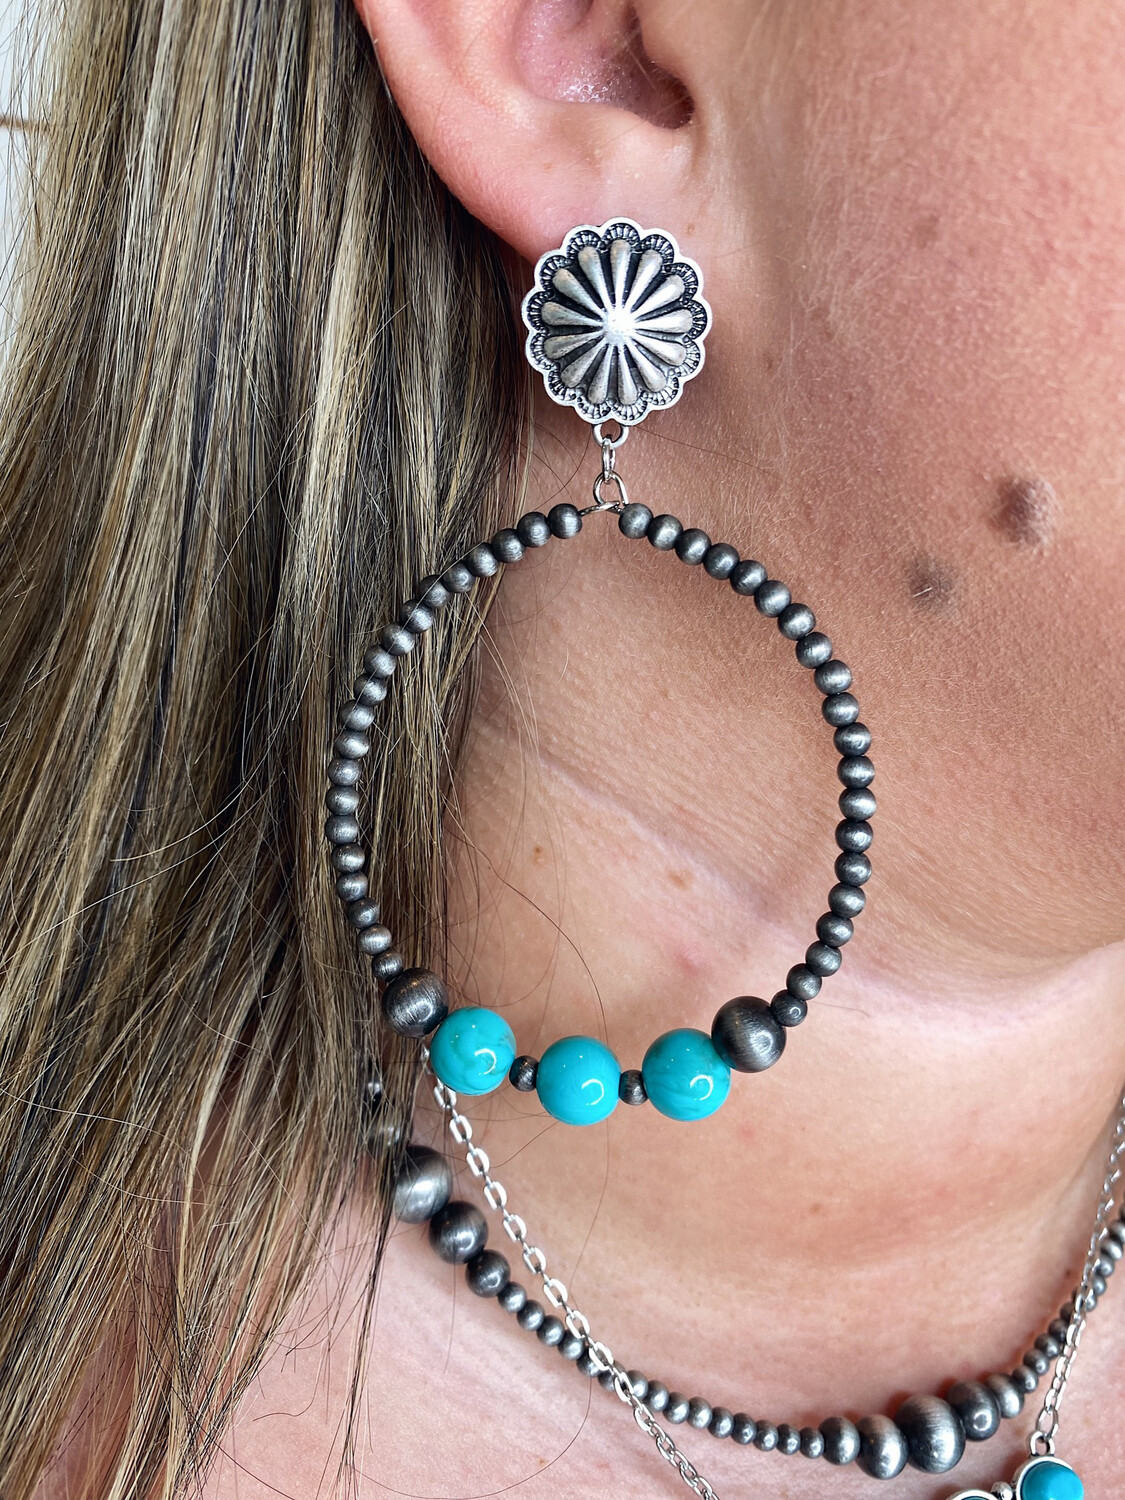 Turquoise & Navajo Hoop Earrings